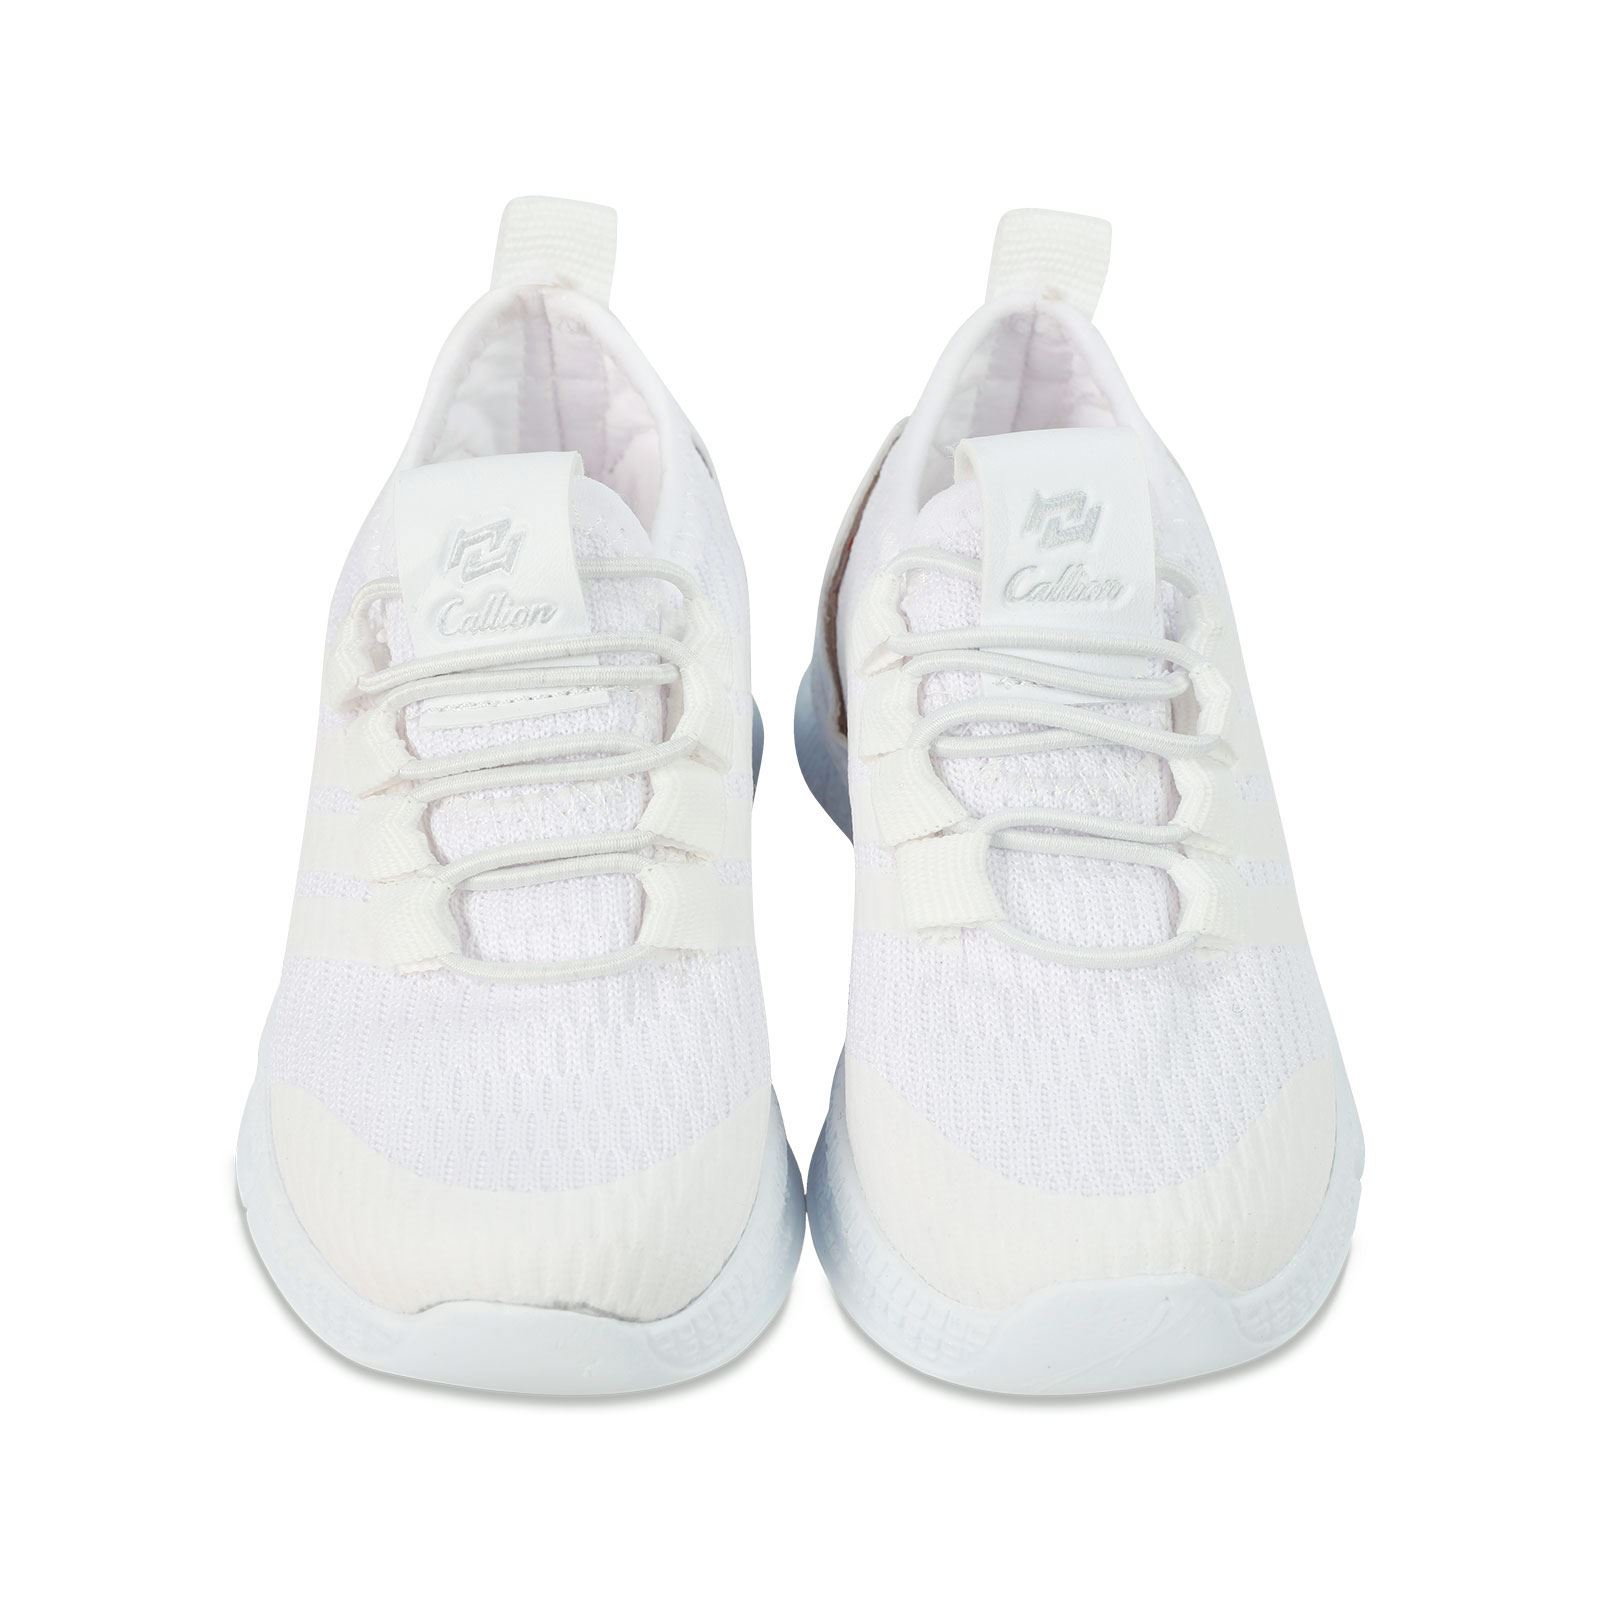 Callion Kız Çocuk Spor Ayakkabı 22-25 Numara Beyaz